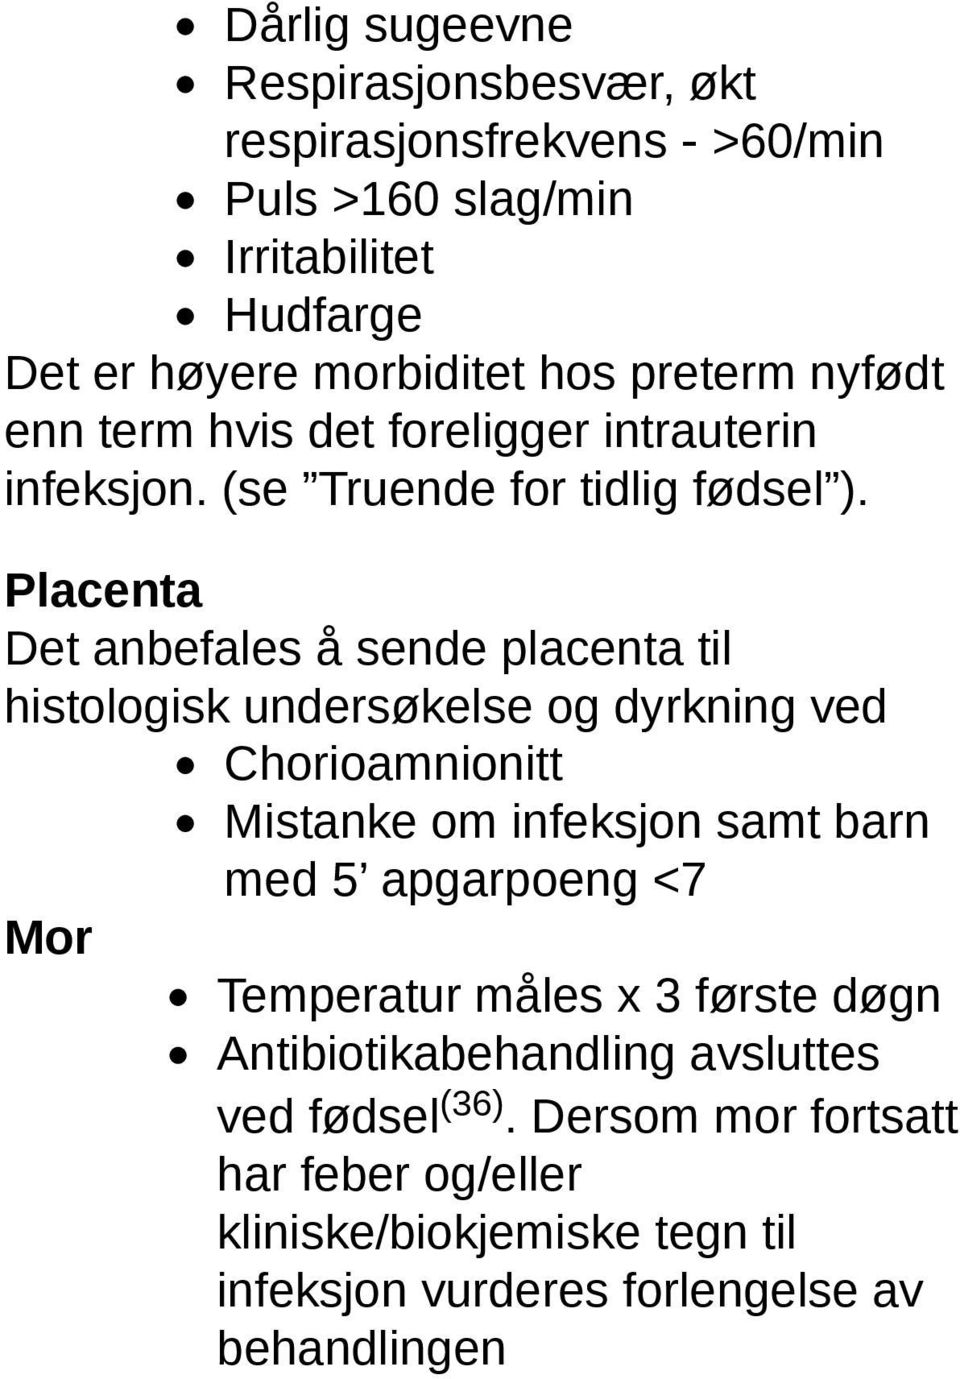 Placenta Det anbefales å sende placenta til histologisk undersøkelse og dyrkning ved Chorioamnionitt Mistanke om infeksjon samt barn med 5